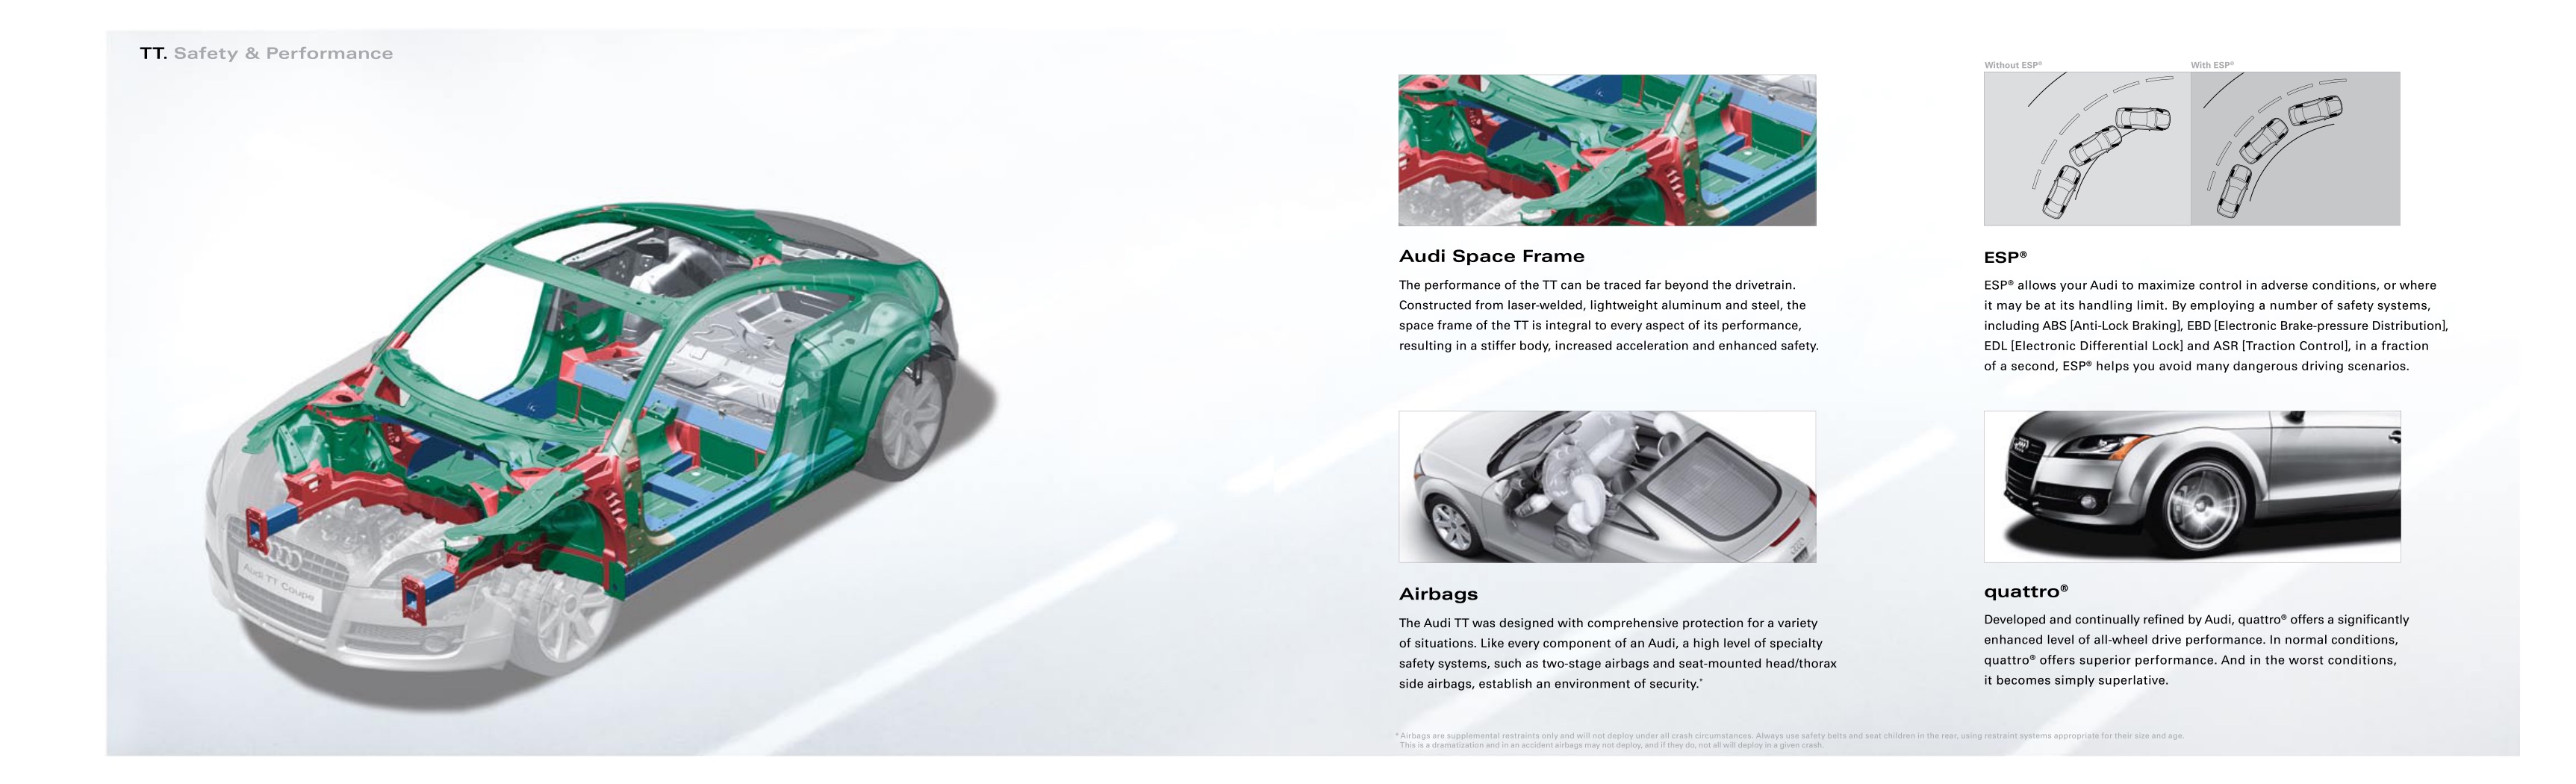 2009 Audi TT Brochure Page 6